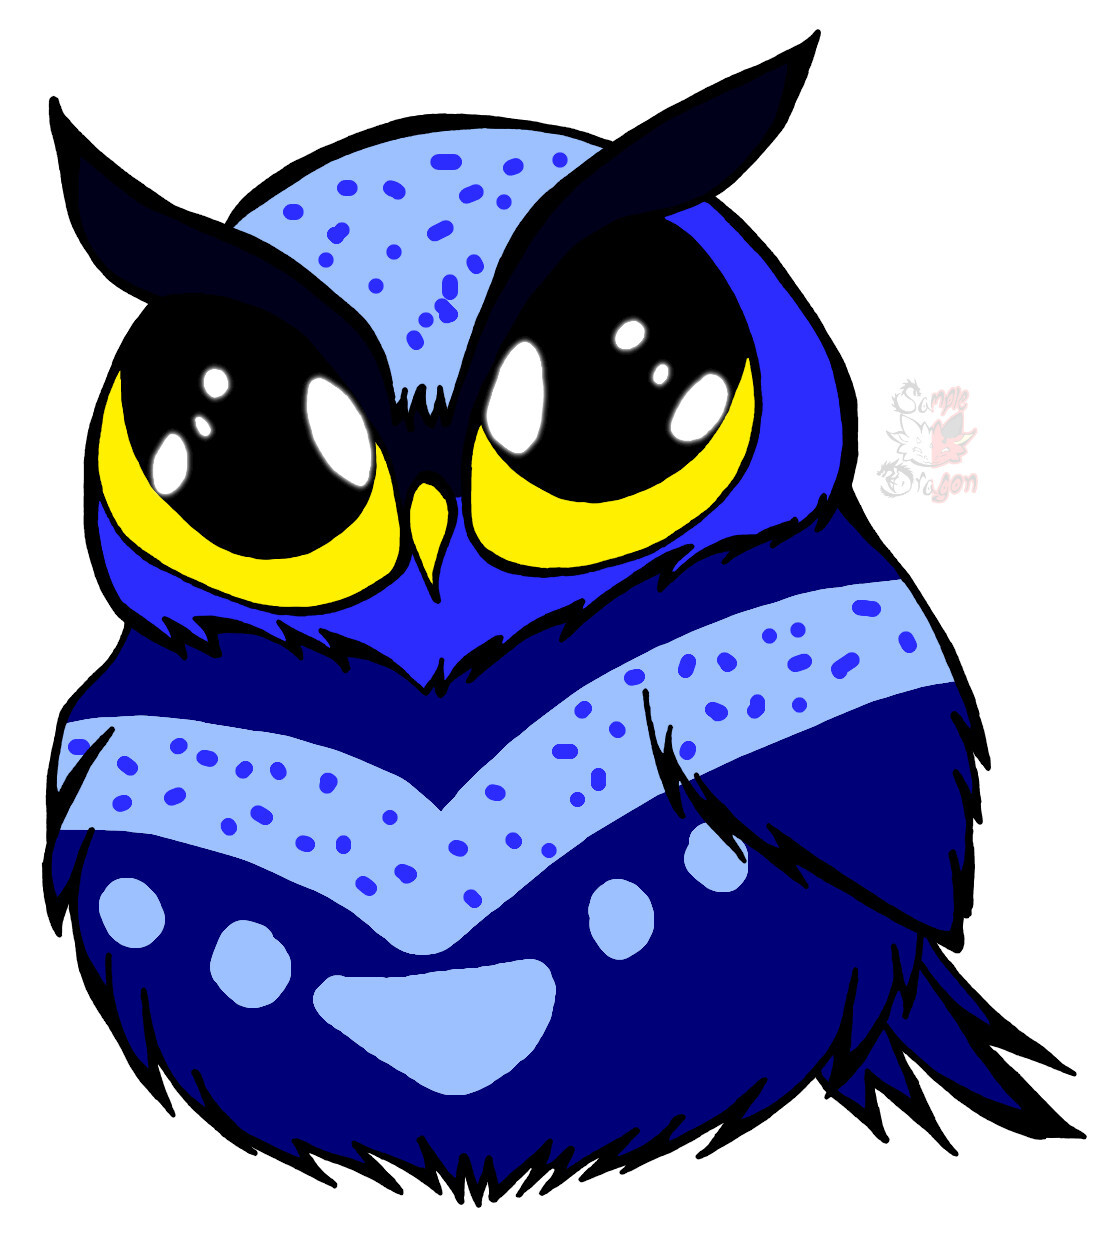 Chibi Round Owl Coloring Page 2024: Với trang tô màu Chibi Round Owl Coloring Page 2024, bạn sẽ được tận hưởng cảm giác yên bình và thư giãn. Hãy tự do sáng tạo và trang trí bức tranh của bạn với những màu sắc đầy màu sắc theo gu của riêng bạn. Hình ảnh này chắc chắn sẽ giúp bạn có những giờ phút thư giãn trọn vẹn.